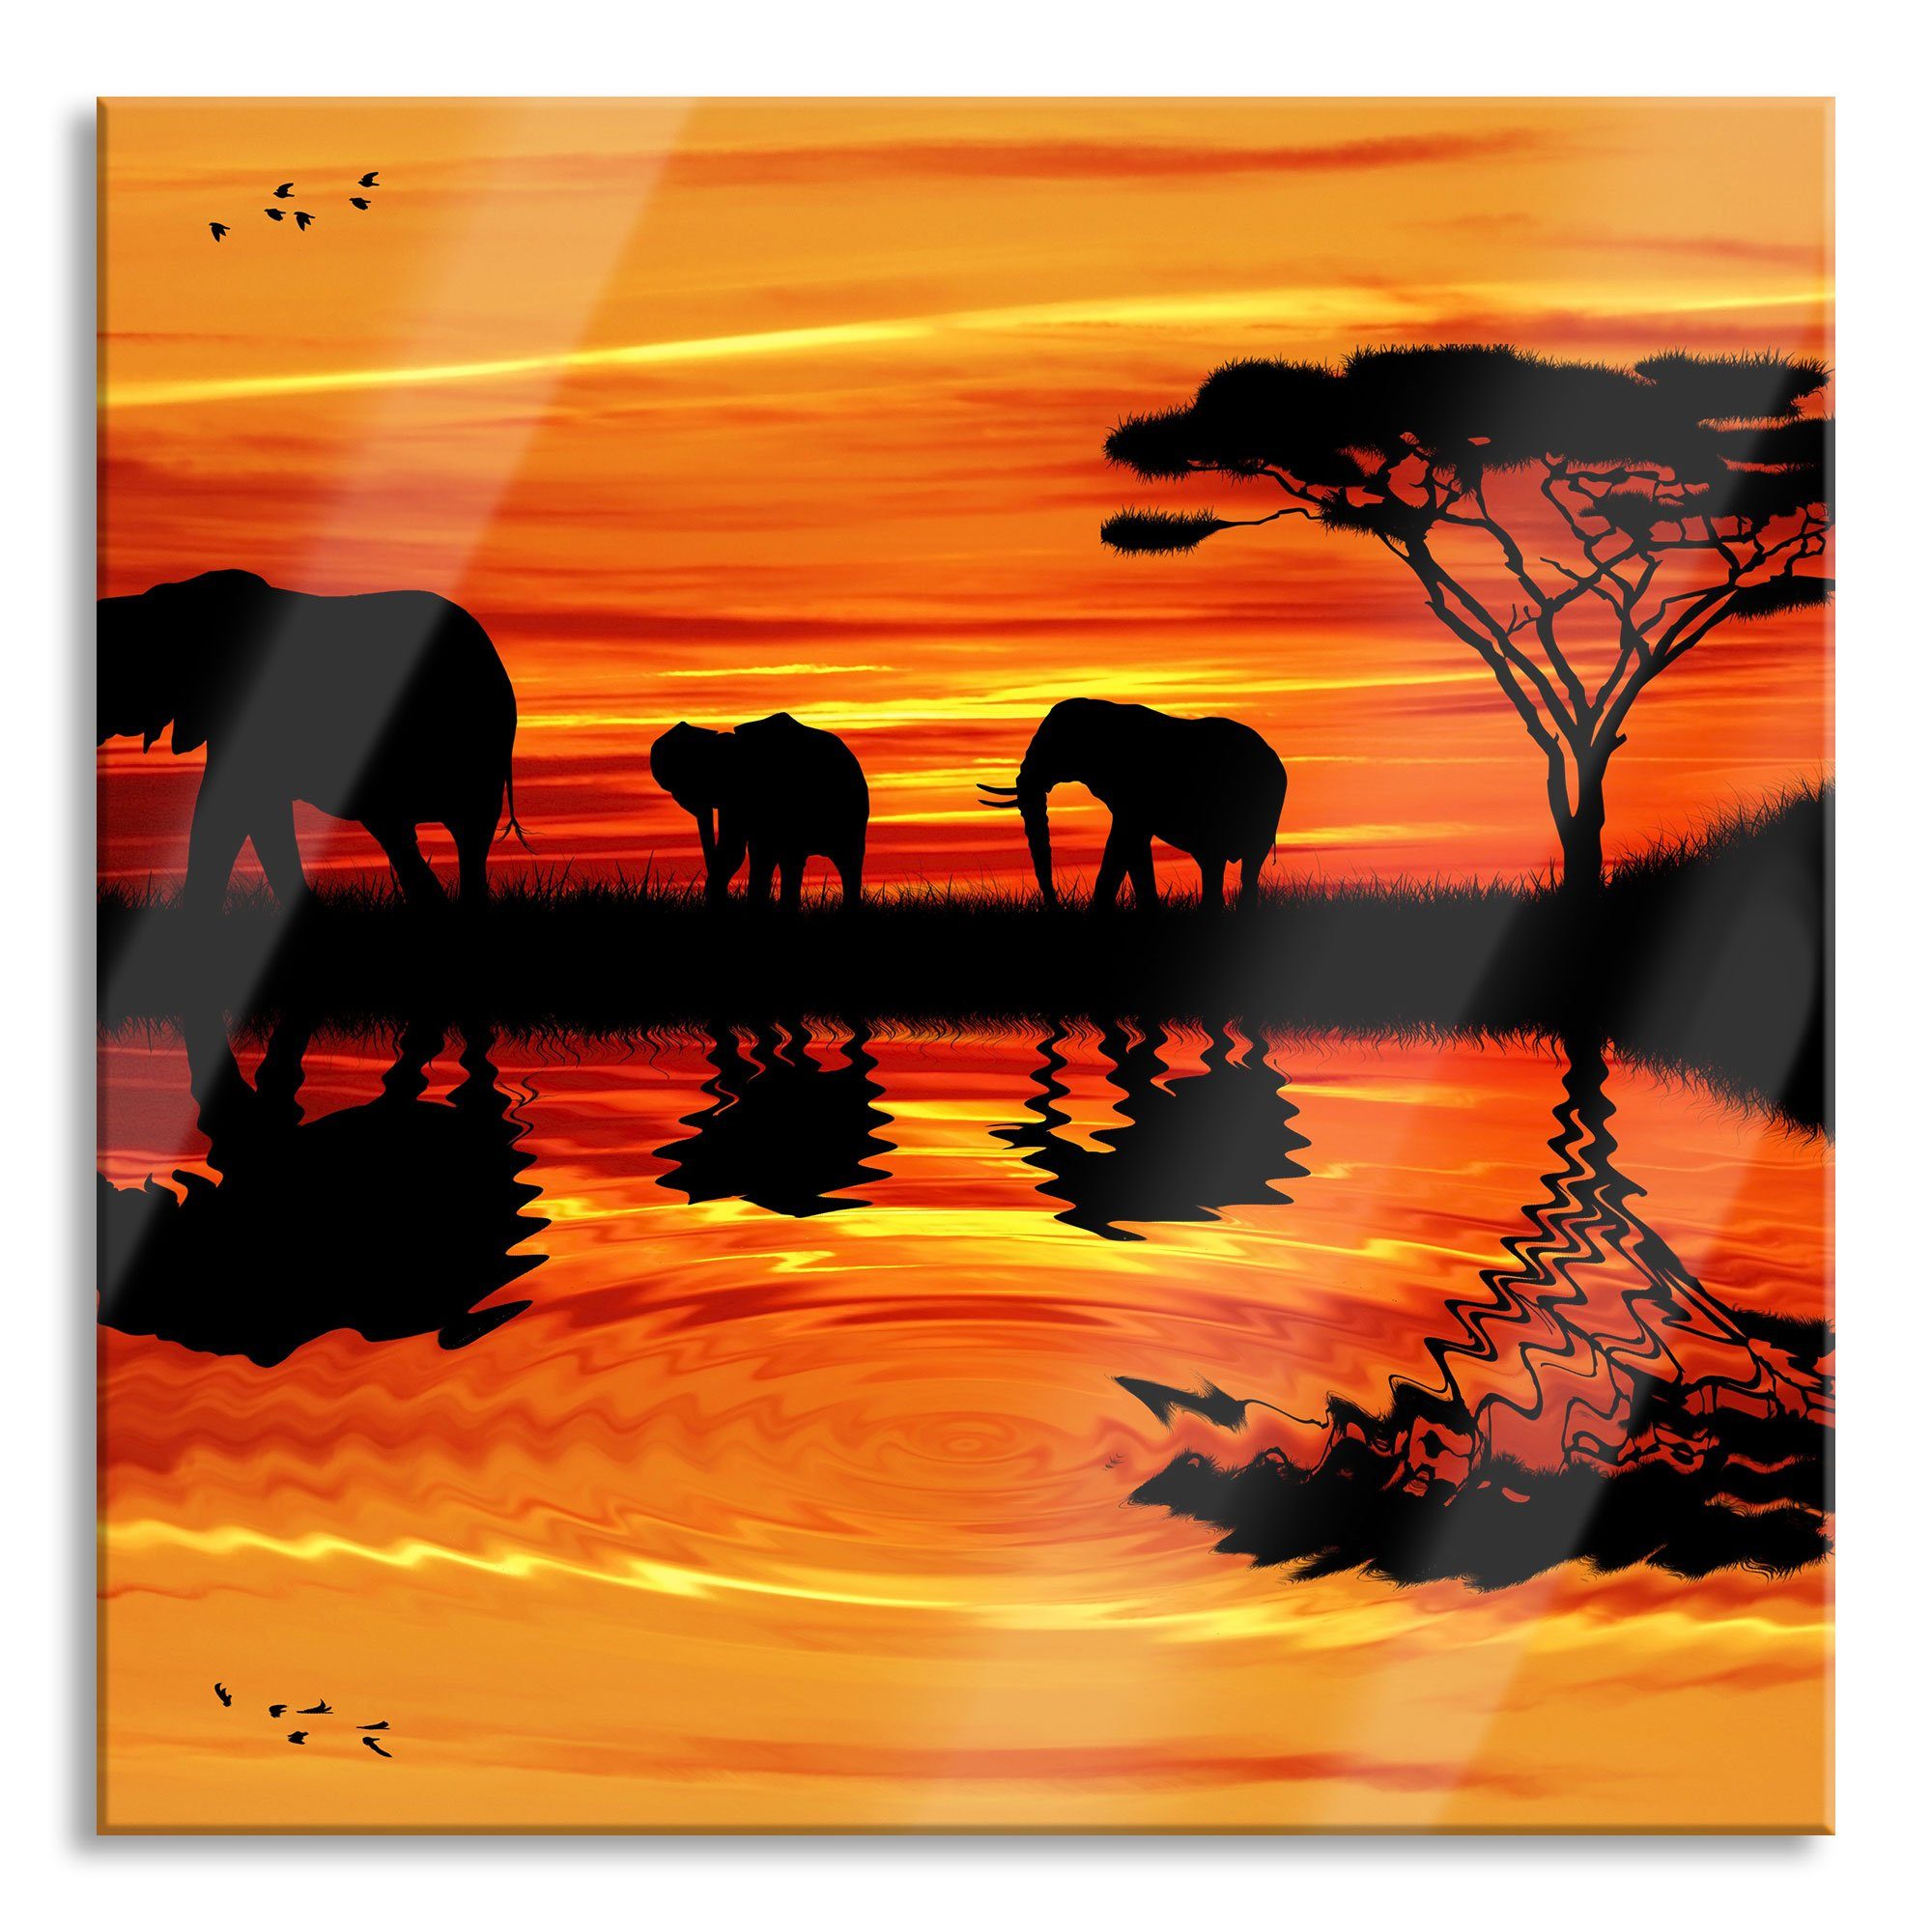 Pixxprint Glasbild Afrika Elefant in Sonnenschein, Afrika Elefant in Sonnenschein (1 St), Glasbild aus Echtglas, inkl. Aufhängungen und Abstandshalter